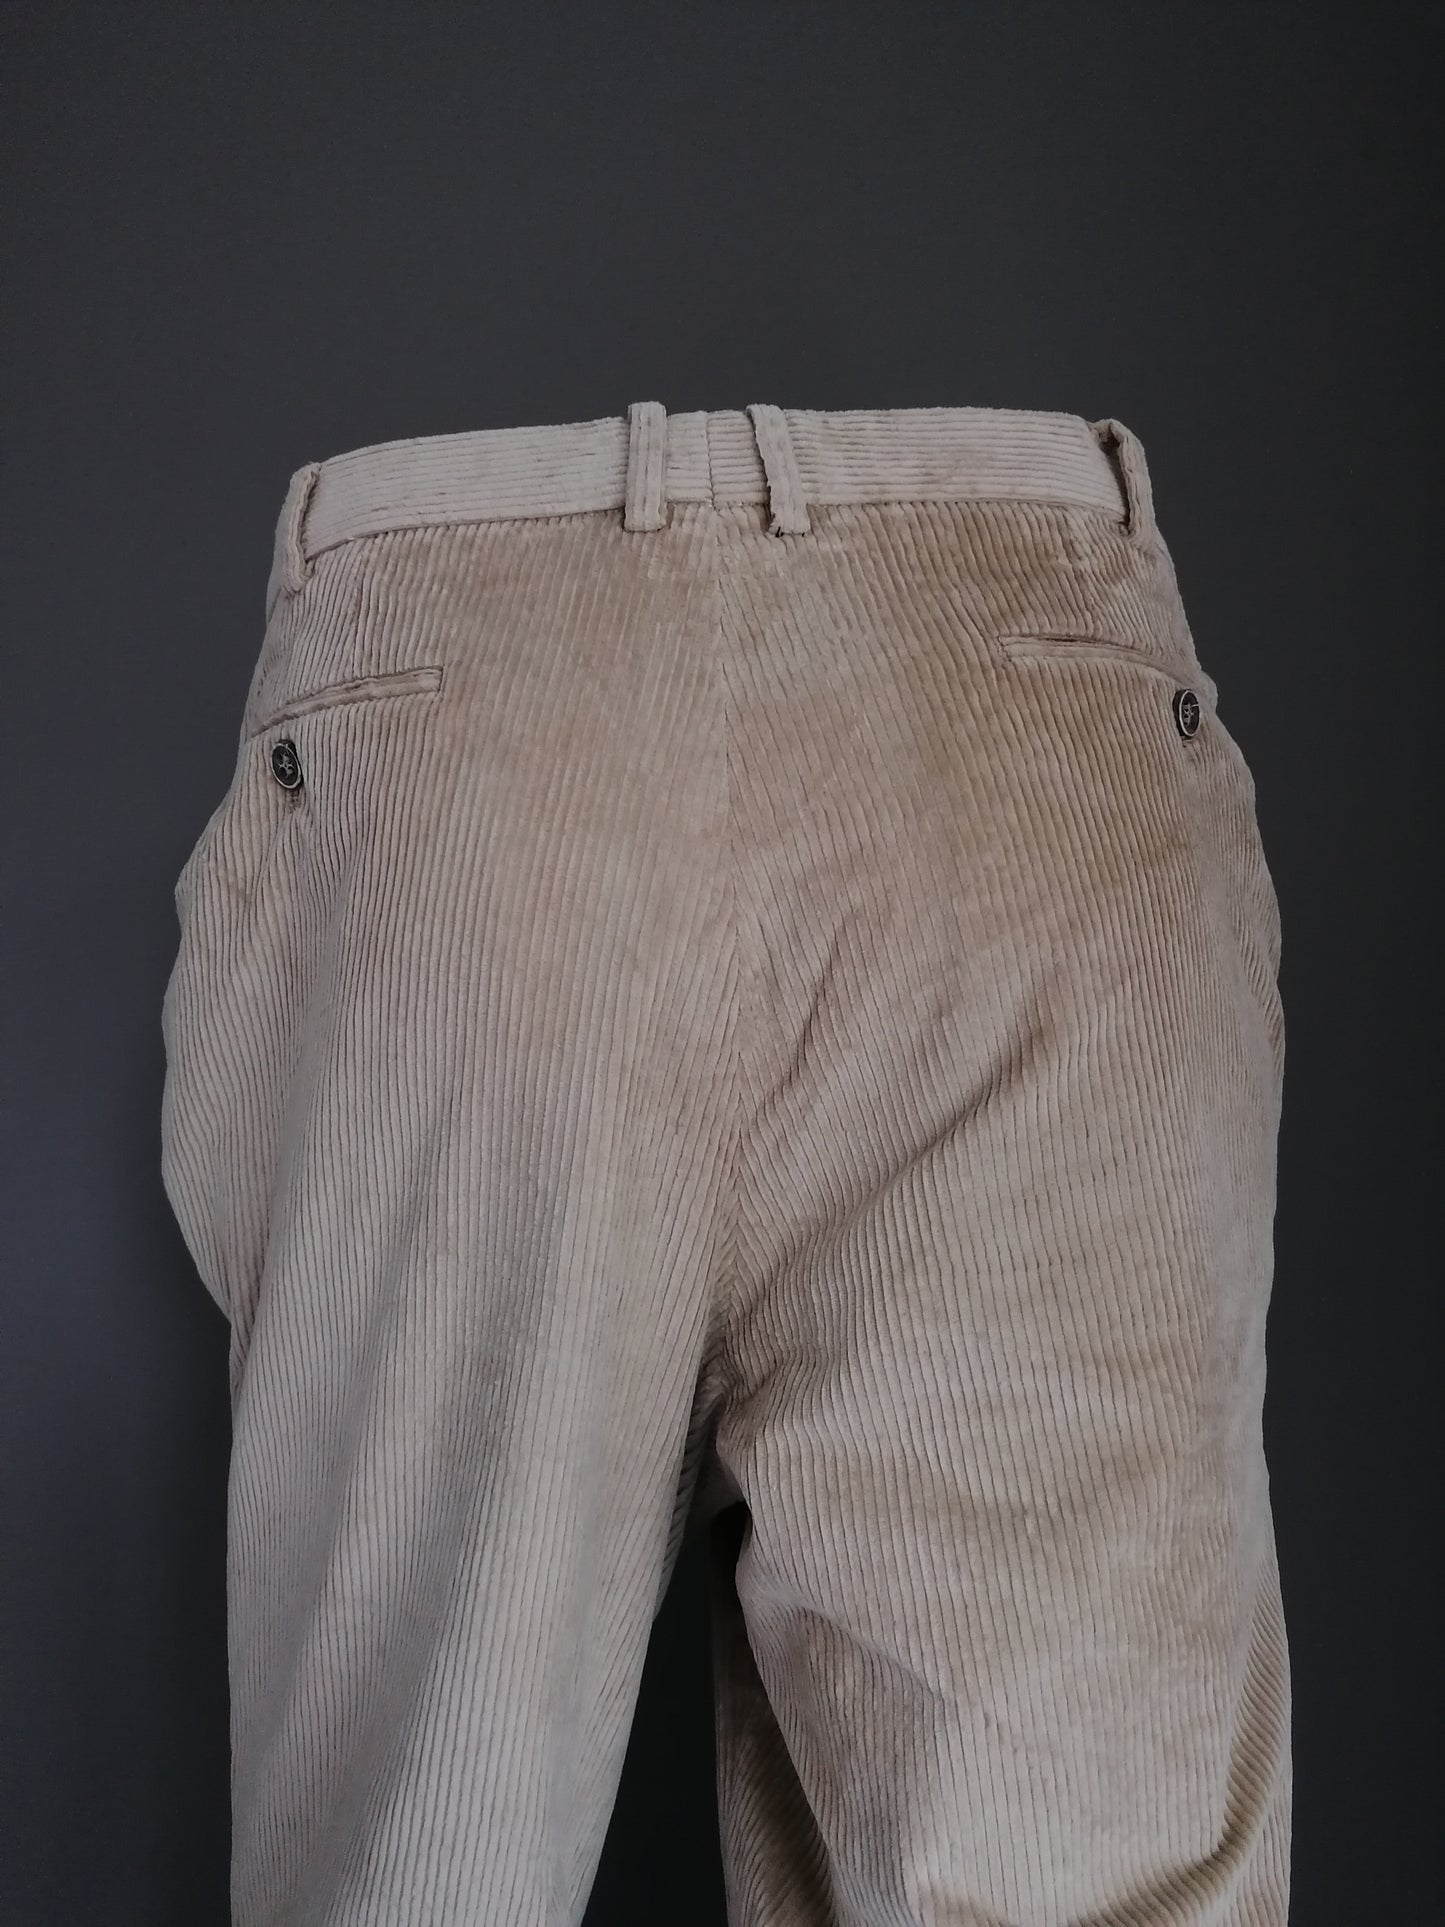 Pantalon nerveux hiltl / pantalon. Couleur brun clair. Taille 54 / L